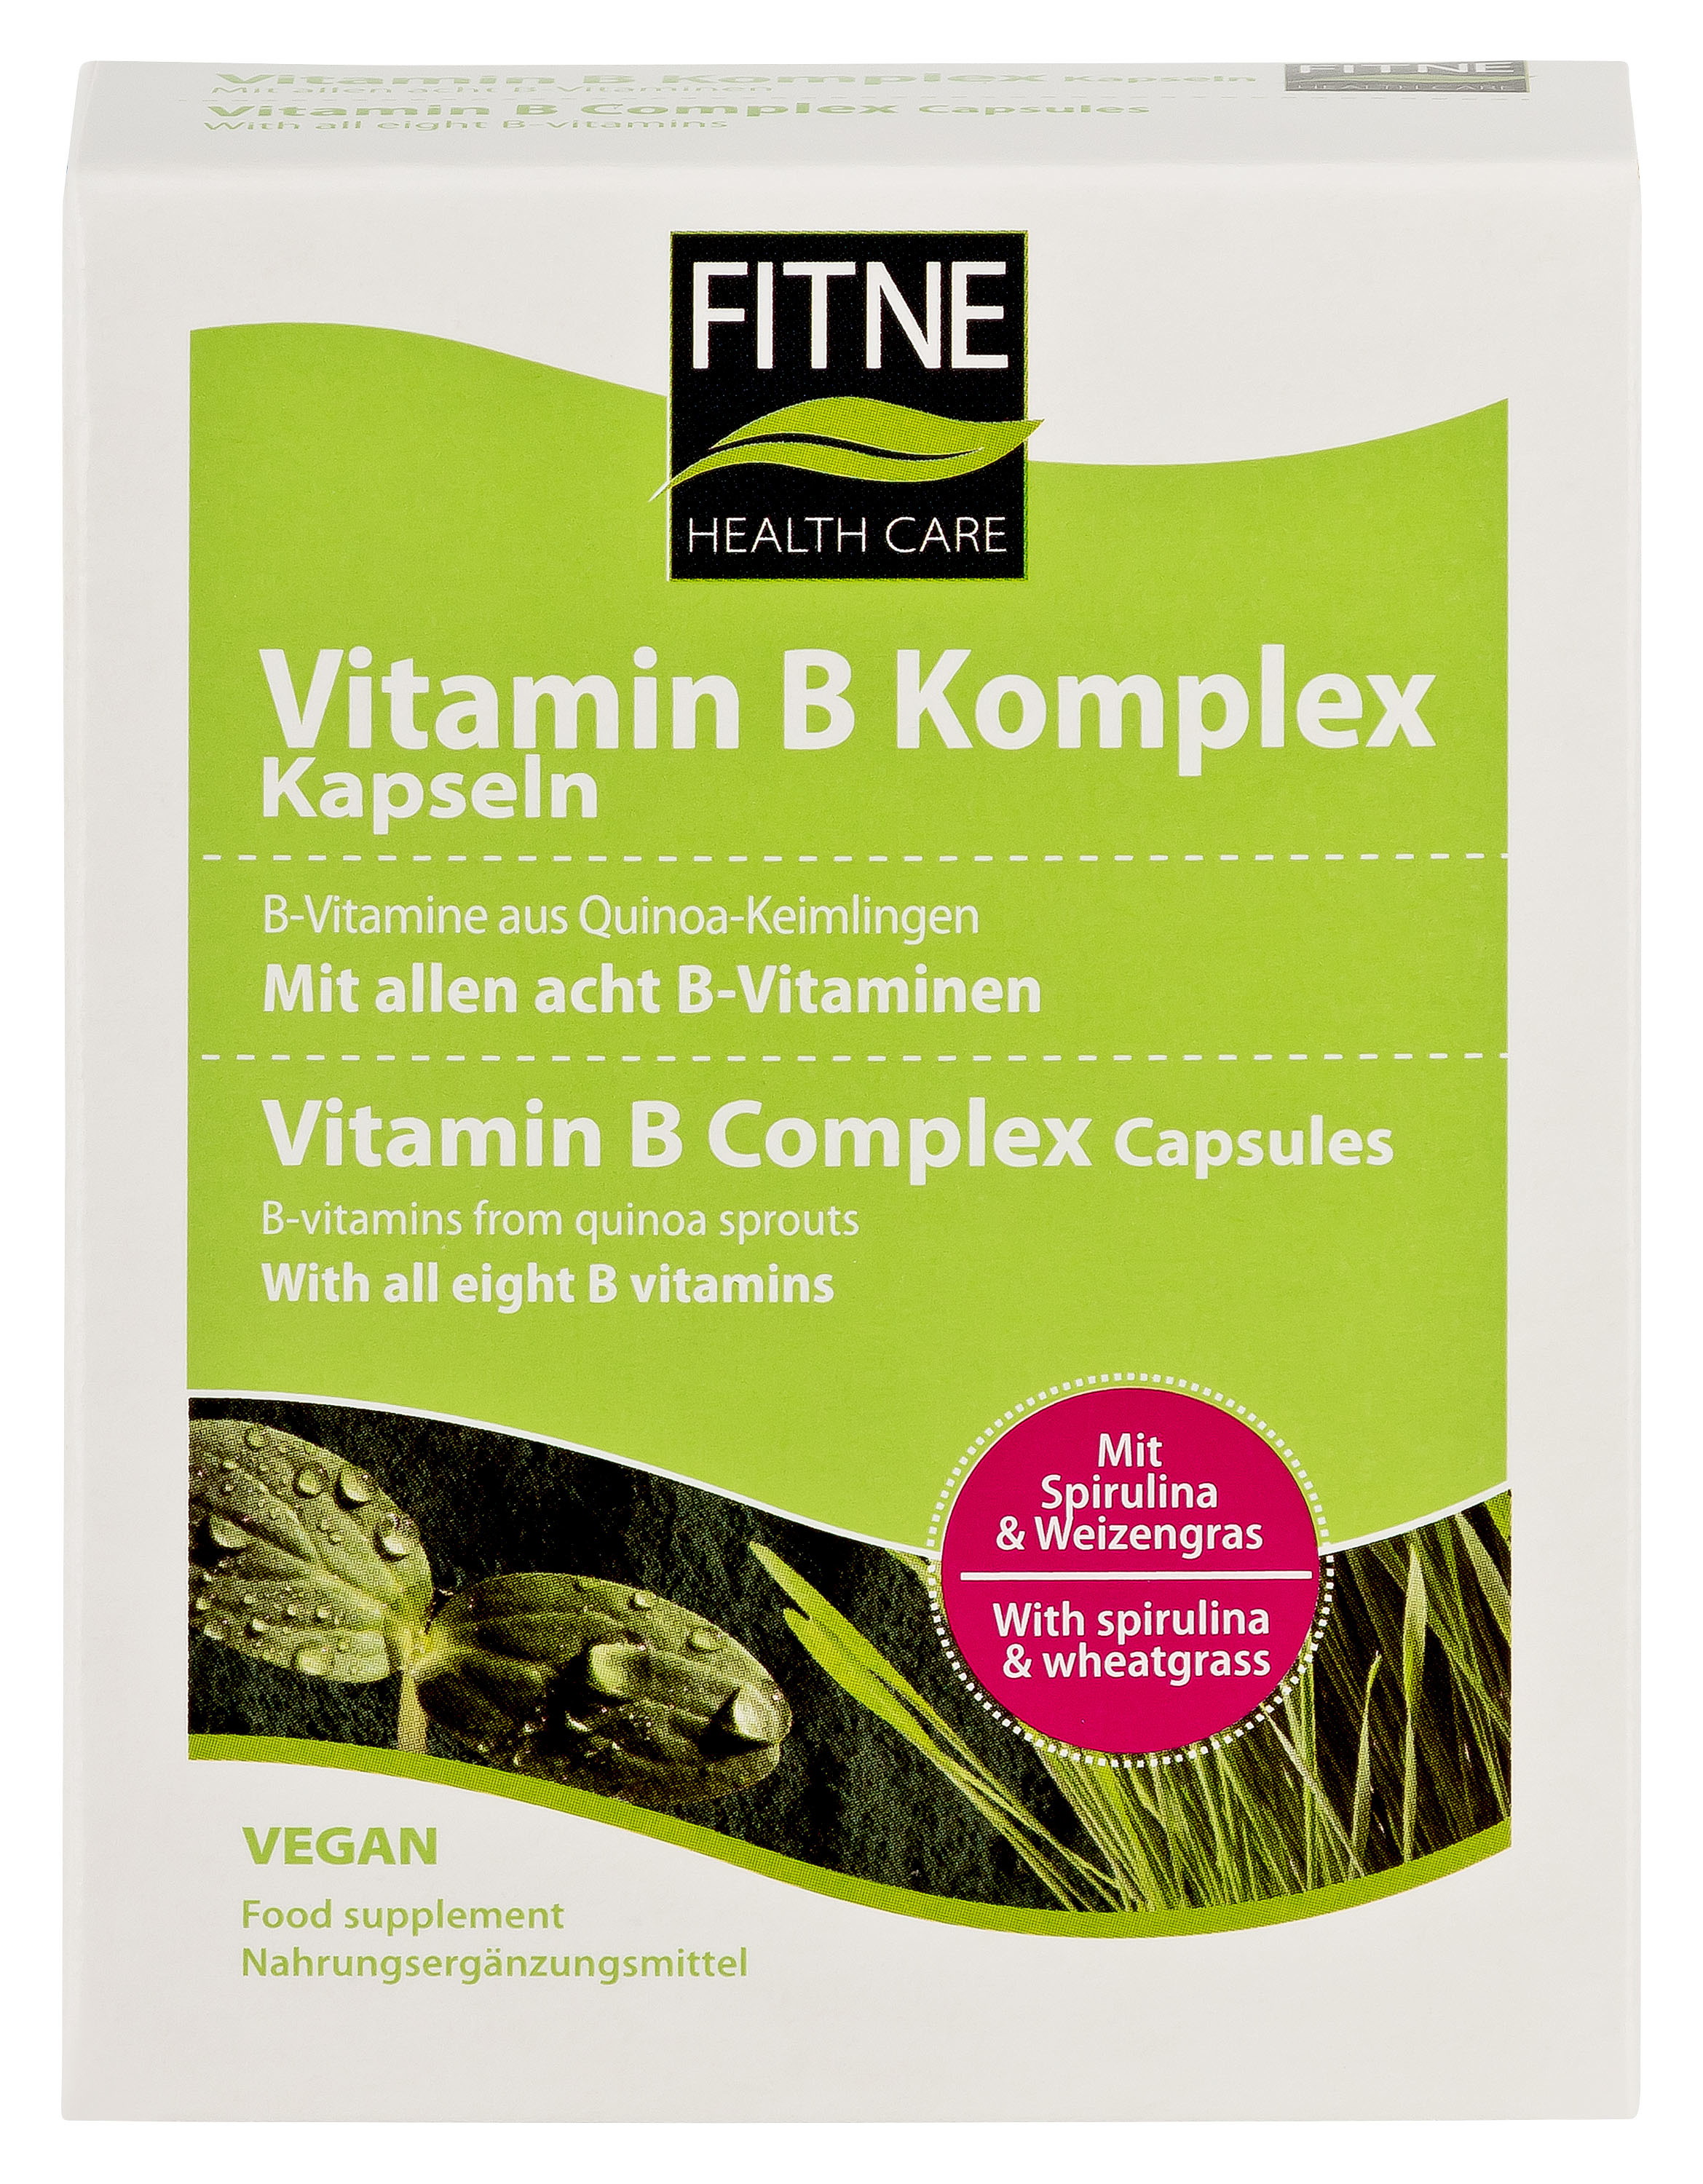 Vitamin B Komplex, 60Stk., 37g, konventionell